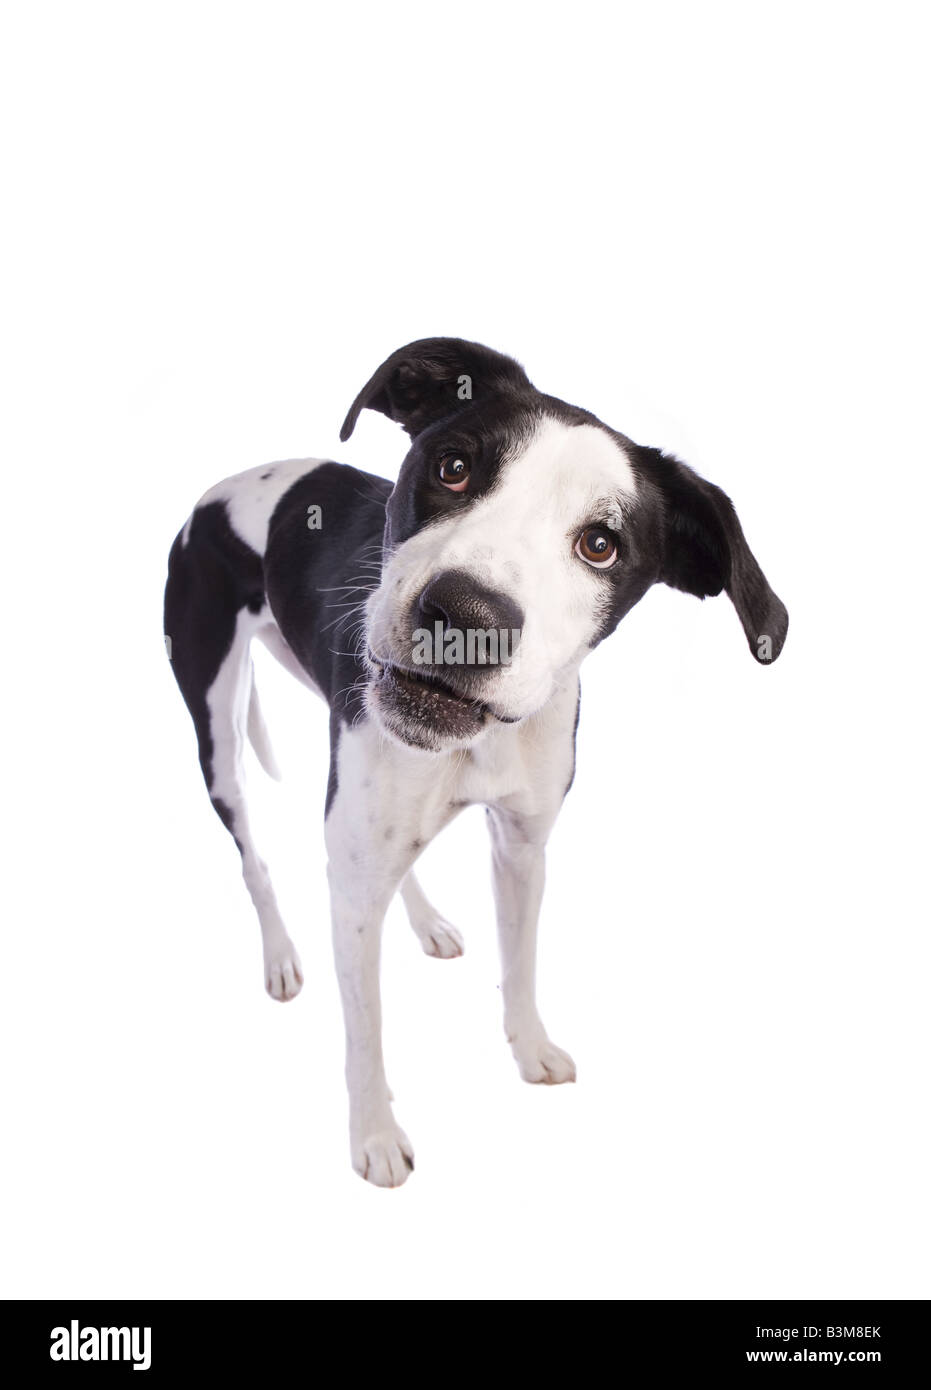 Sorridente in bianco e nero un alano mix cane isolato su sfondo bianco Foto Stock